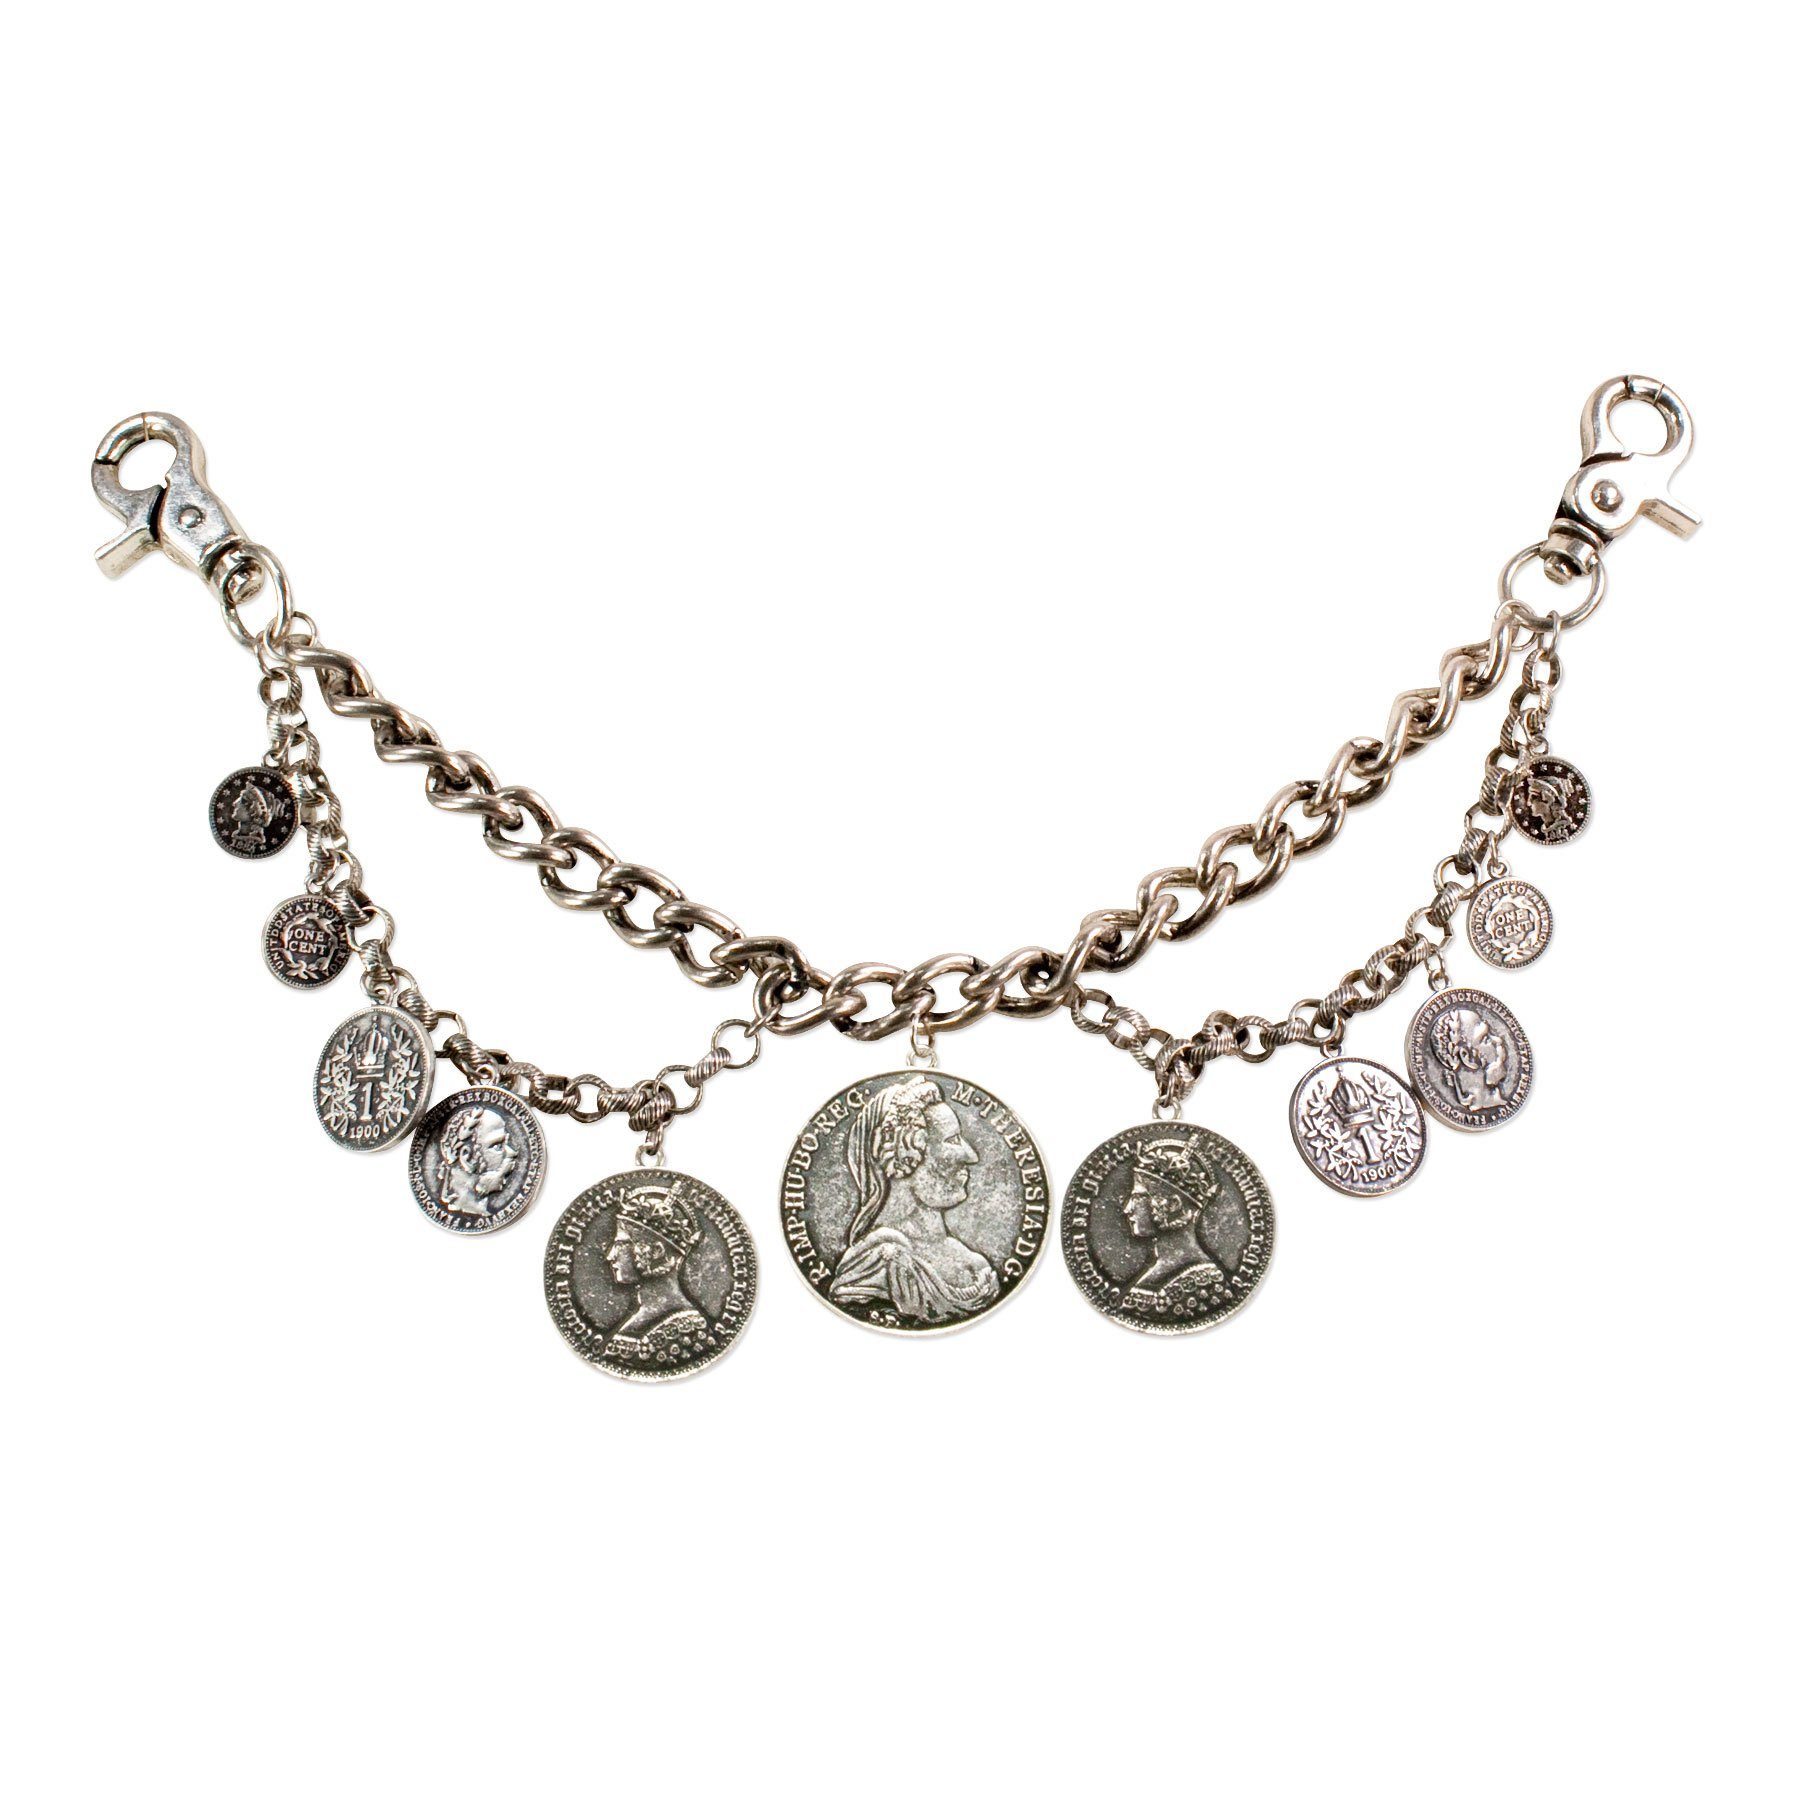 Alpenflüstern Kette (antik-silber-farben), die Hochwertiger Herren-Trachtenschmuck - mit Münz-Anhängern mit Lederhose Münzen für Trachten-Charivari Anhänger